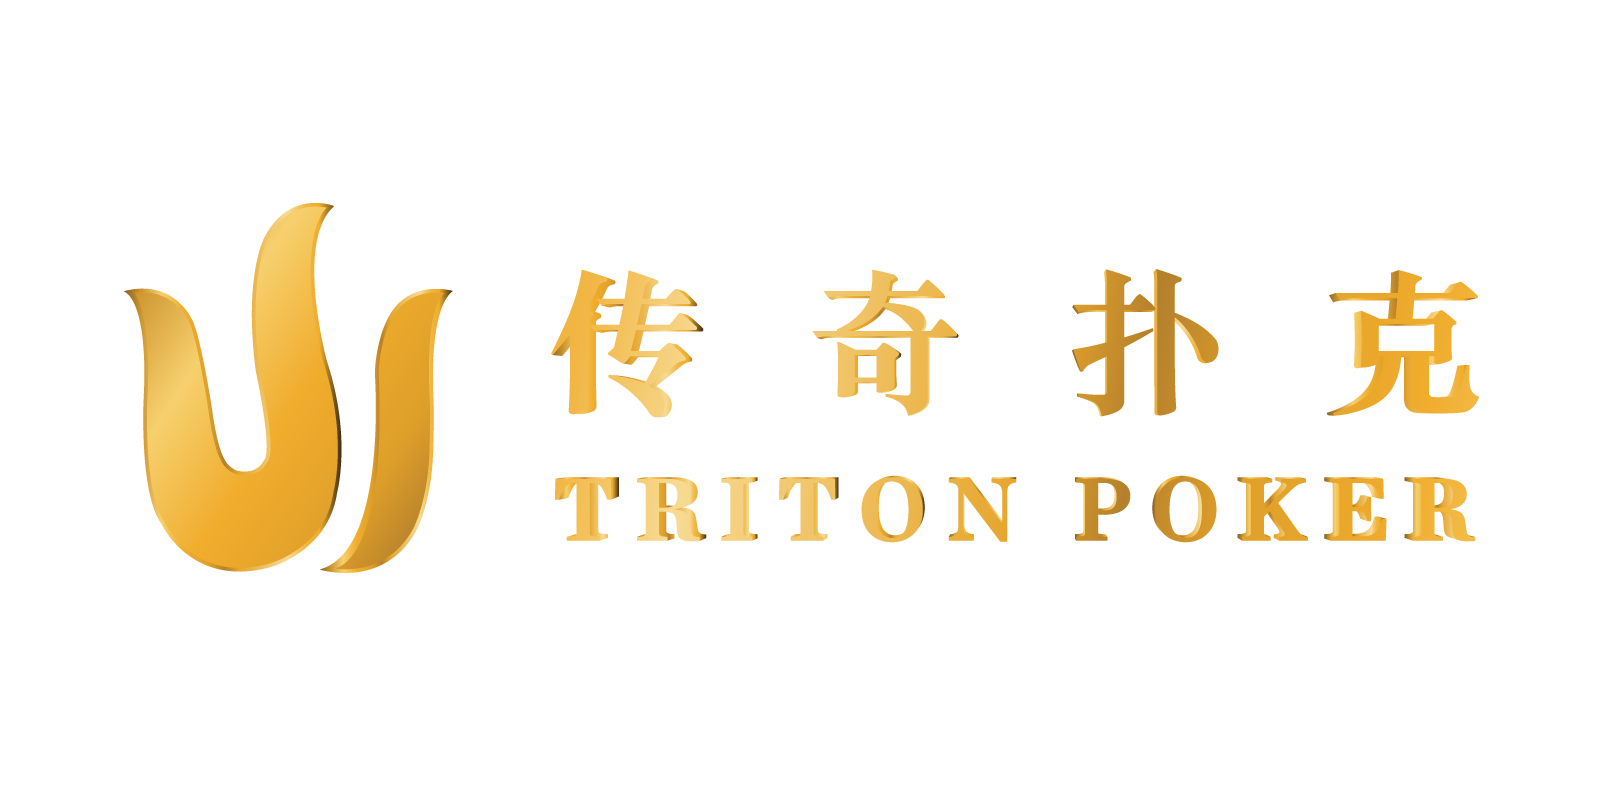 Triton Series Live Stream Poker Events